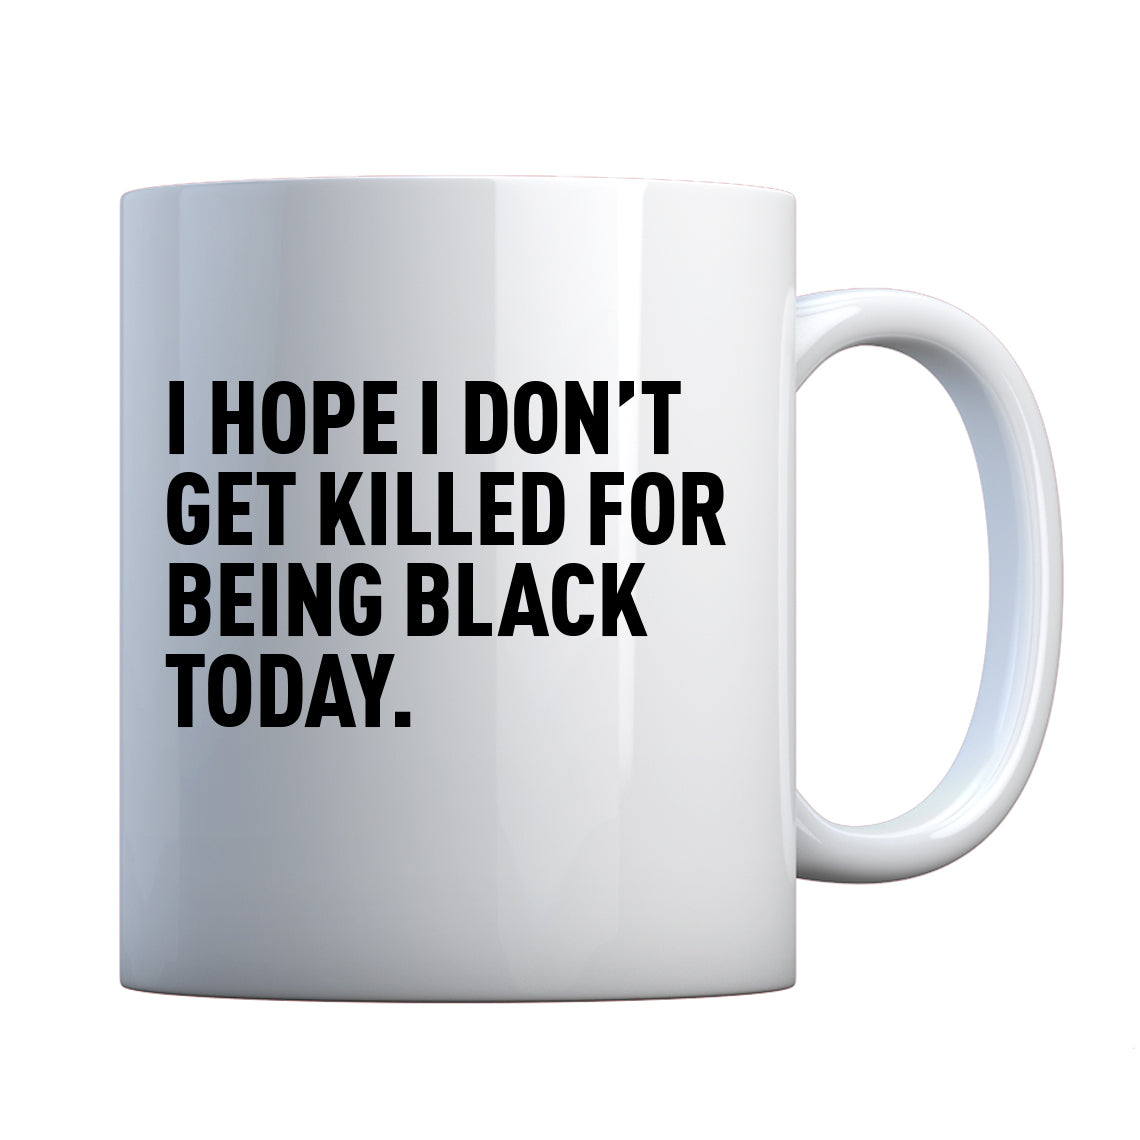 I Hope I Don't Get Killed for Being Black Today. Ceramic Gift Mug